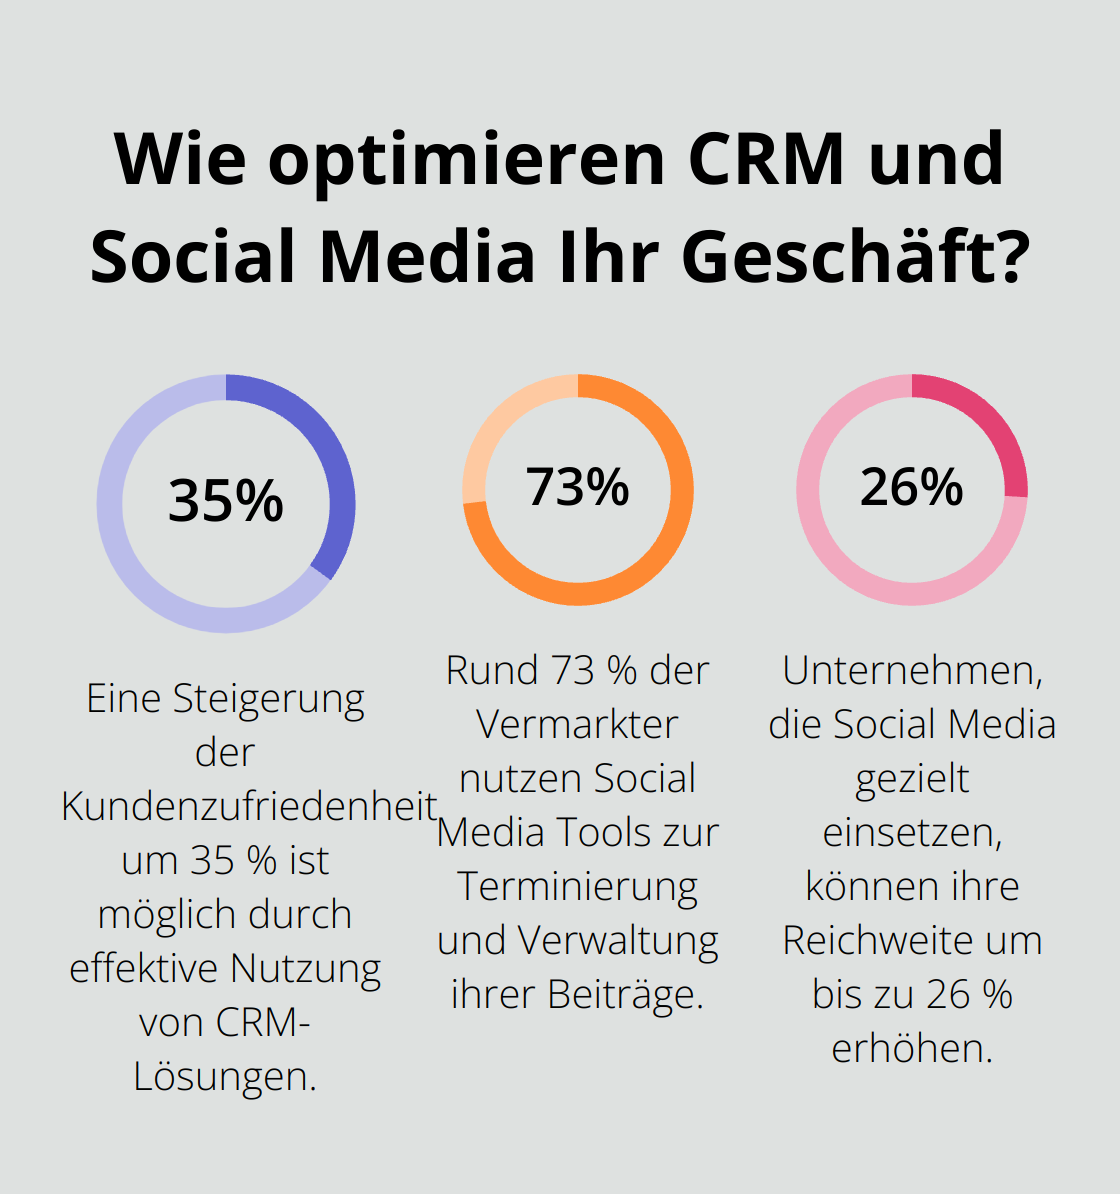 Fact - Wie optimieren CRM und Social Media Ihr Geschäft?